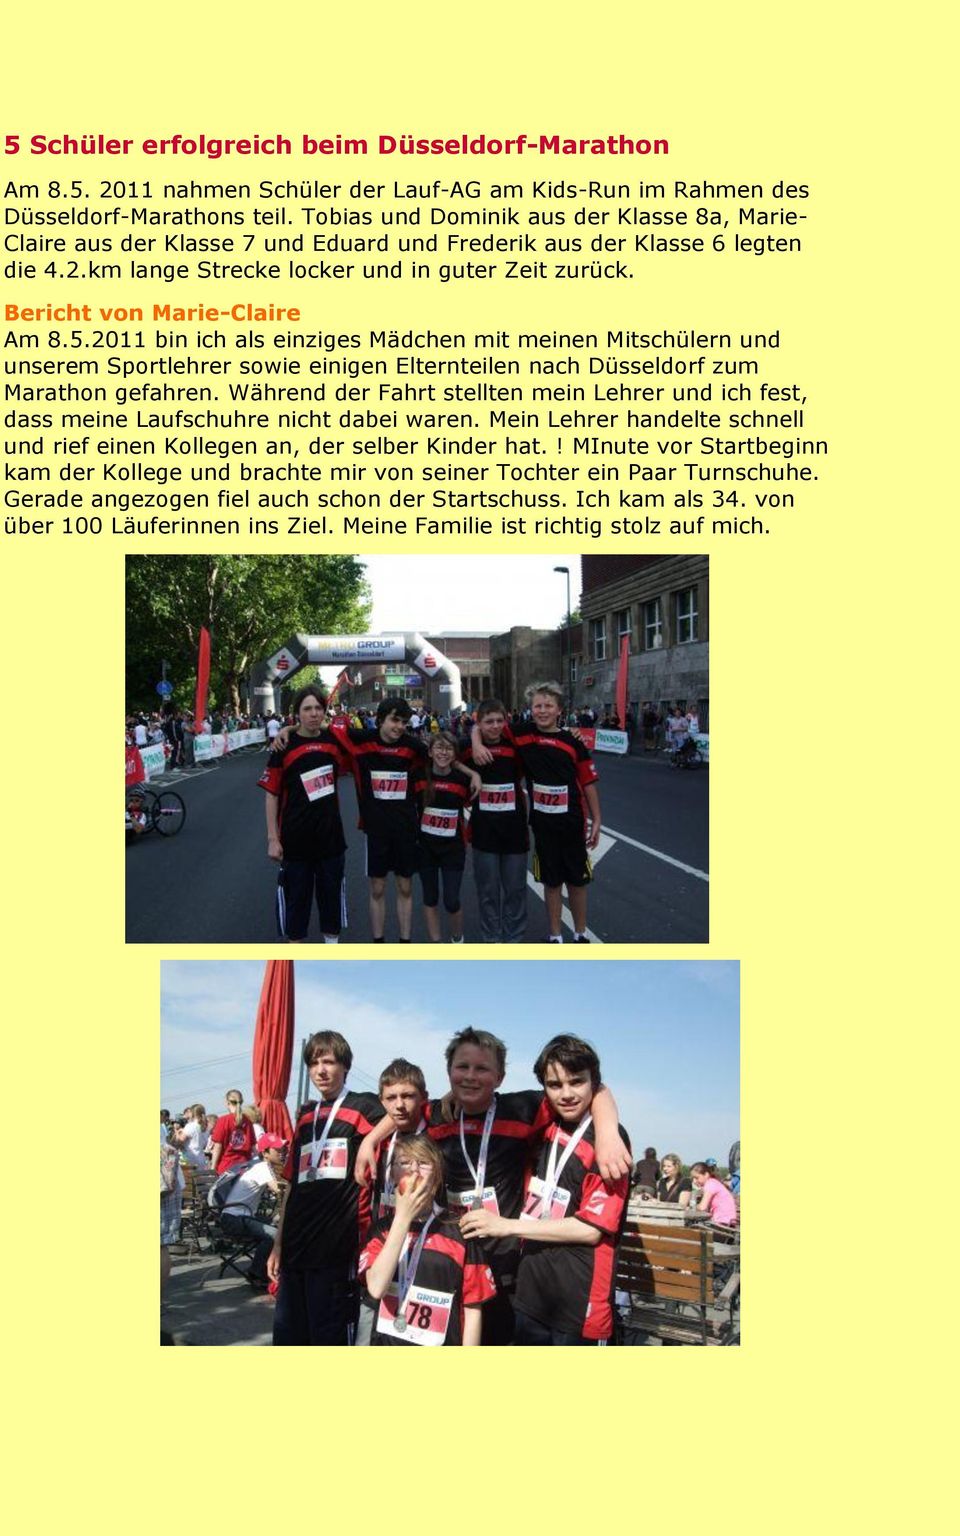 Bericht von Marie-Claire Am 8.5.2011 bin ich als einziges Mädchen mit meinen Mitschülern und unserem Sportlehrer sowie einigen Elternteilen nach Düsseldorf zum Marathon gefahren.